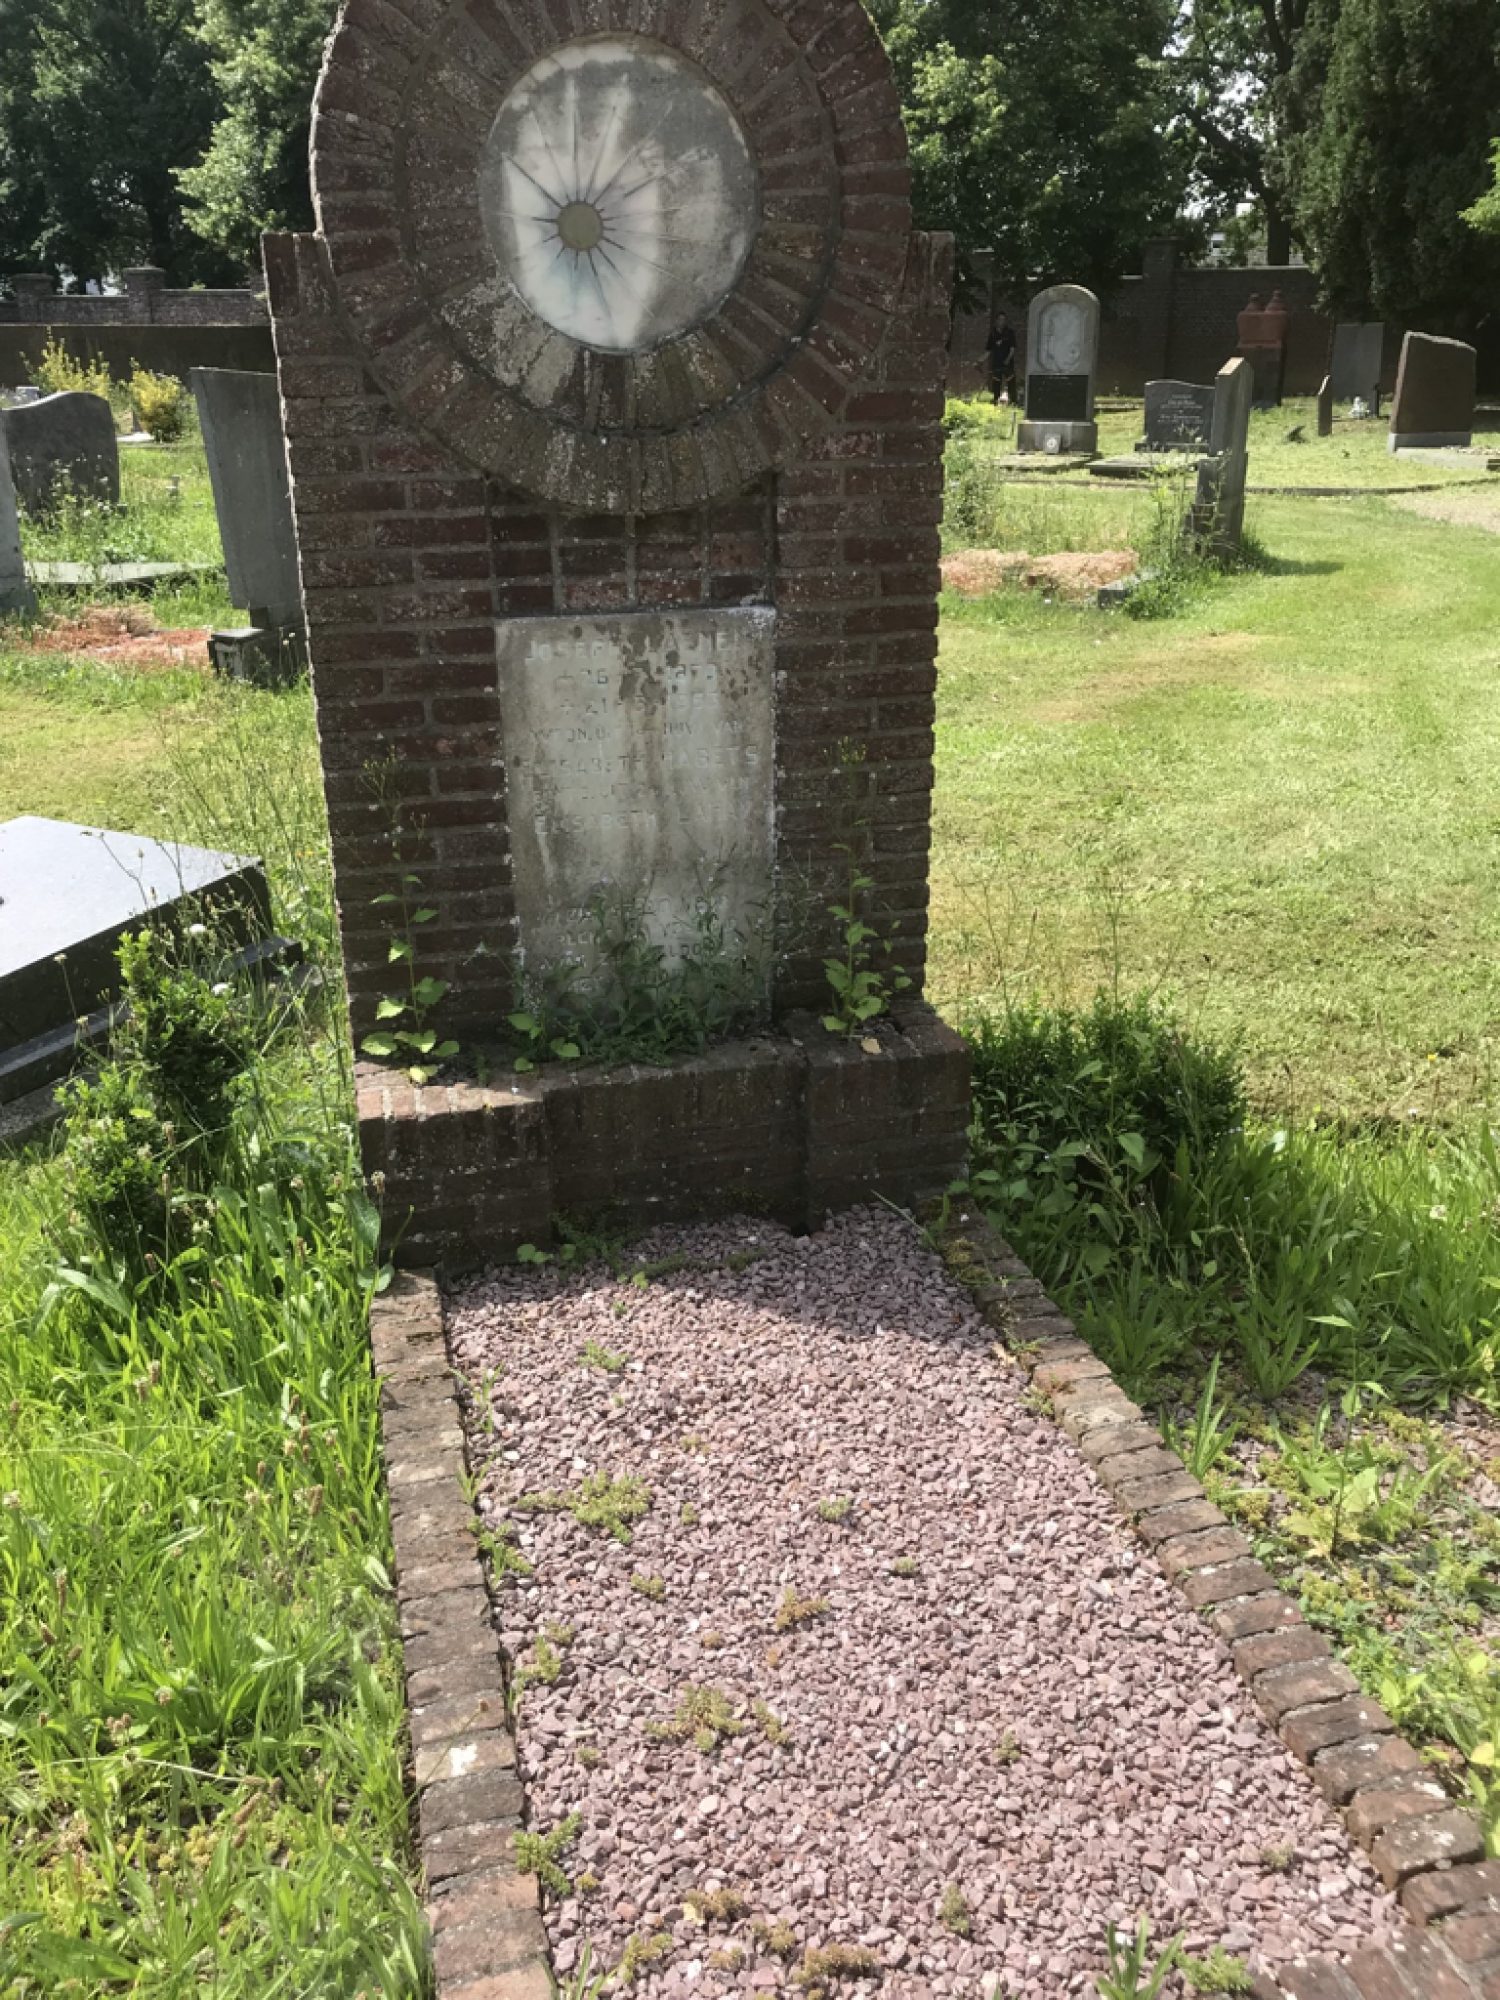 https://limburg.pvda.nl/nieuws/1-mei-2020-dag-van-de-arbeid-een-virtueel-bezoek-aan-vak-aa-in-coronatijd/Het graf van Joseph Laenen.